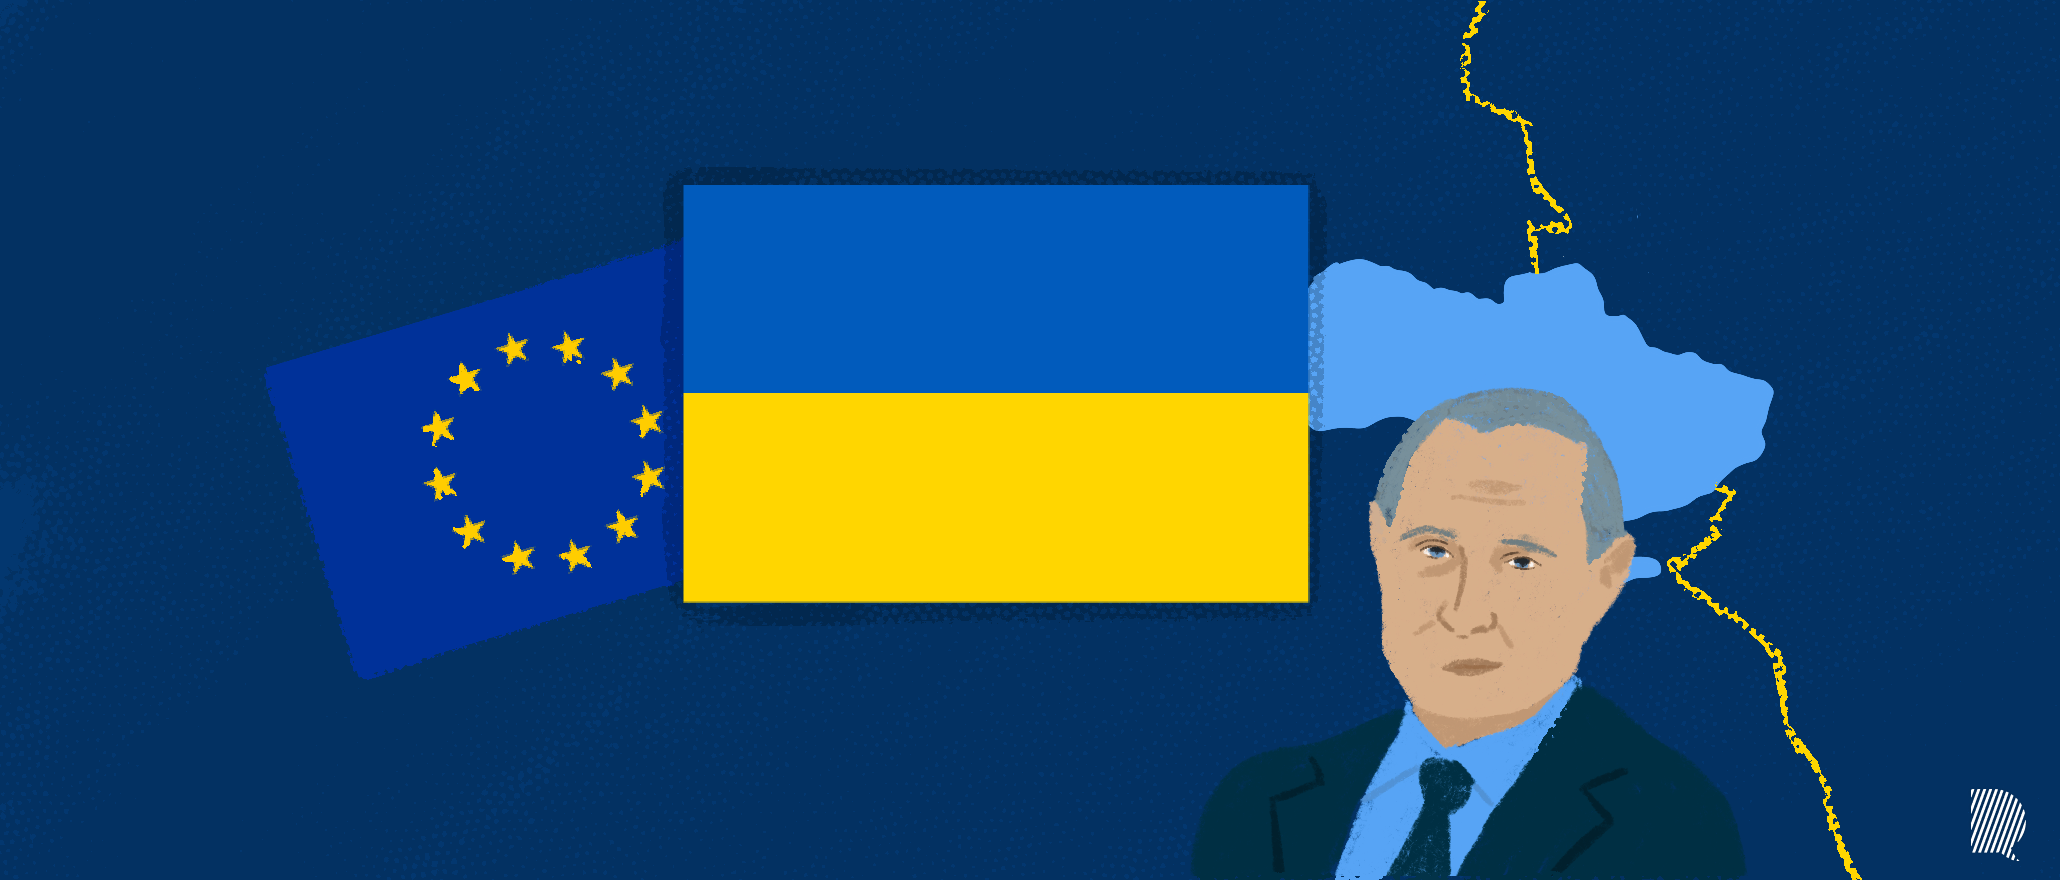 Vladimir Poutine sur fond de drapeau de l'Ukraine et de l'Union Européenne